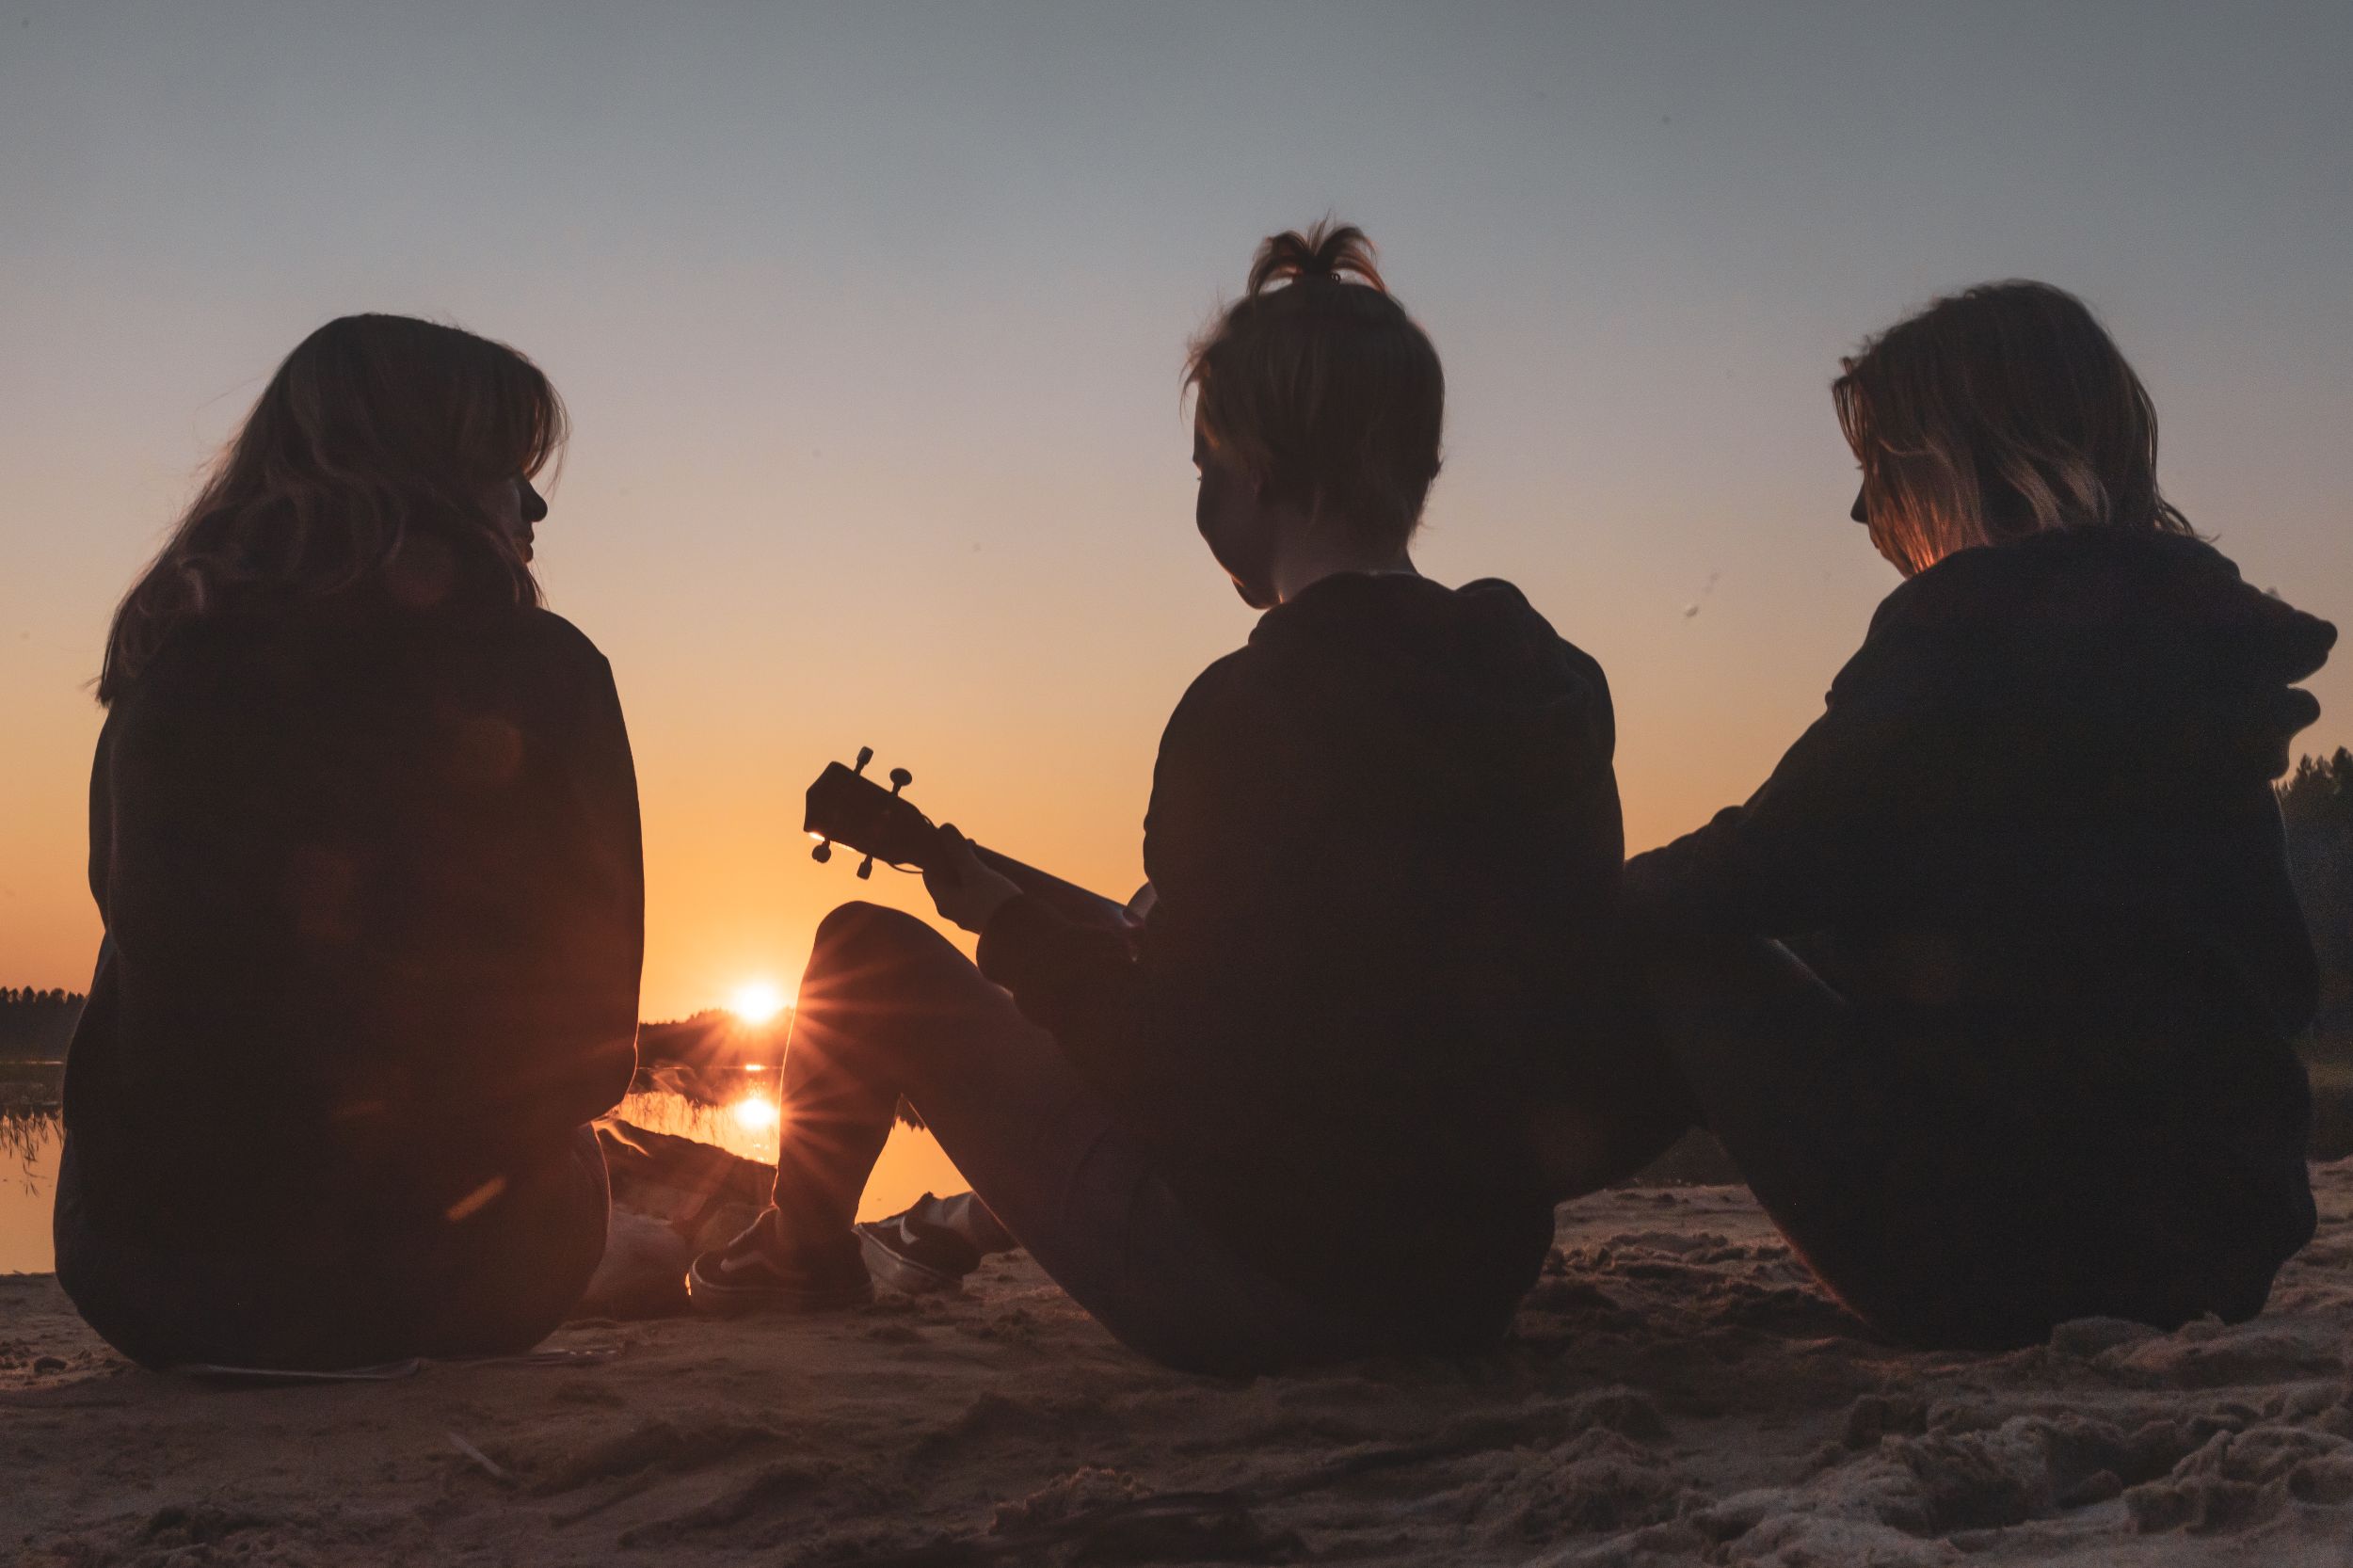 Nuorisokeskus Metsäkartano leiri nuoret rannalla auringonlaskussa